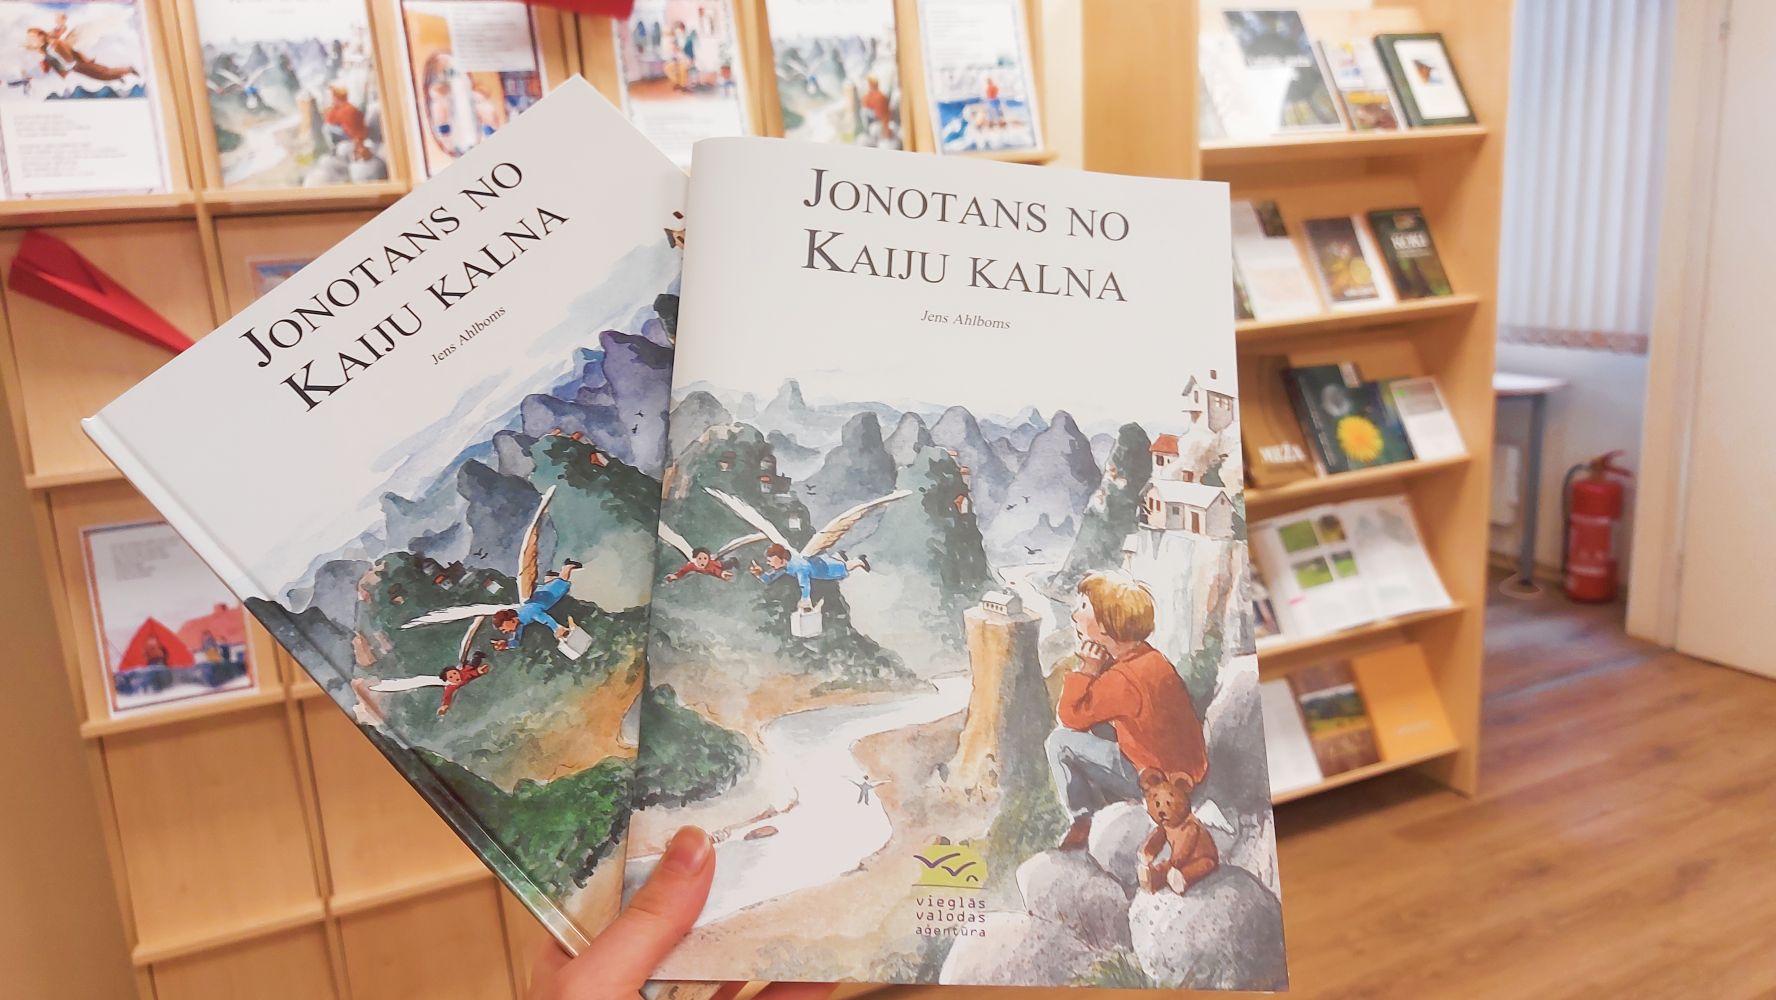 Grāmatas "Jonotans no Kaiju kalna” pirmizdevums un izdevums vieglajā valodā